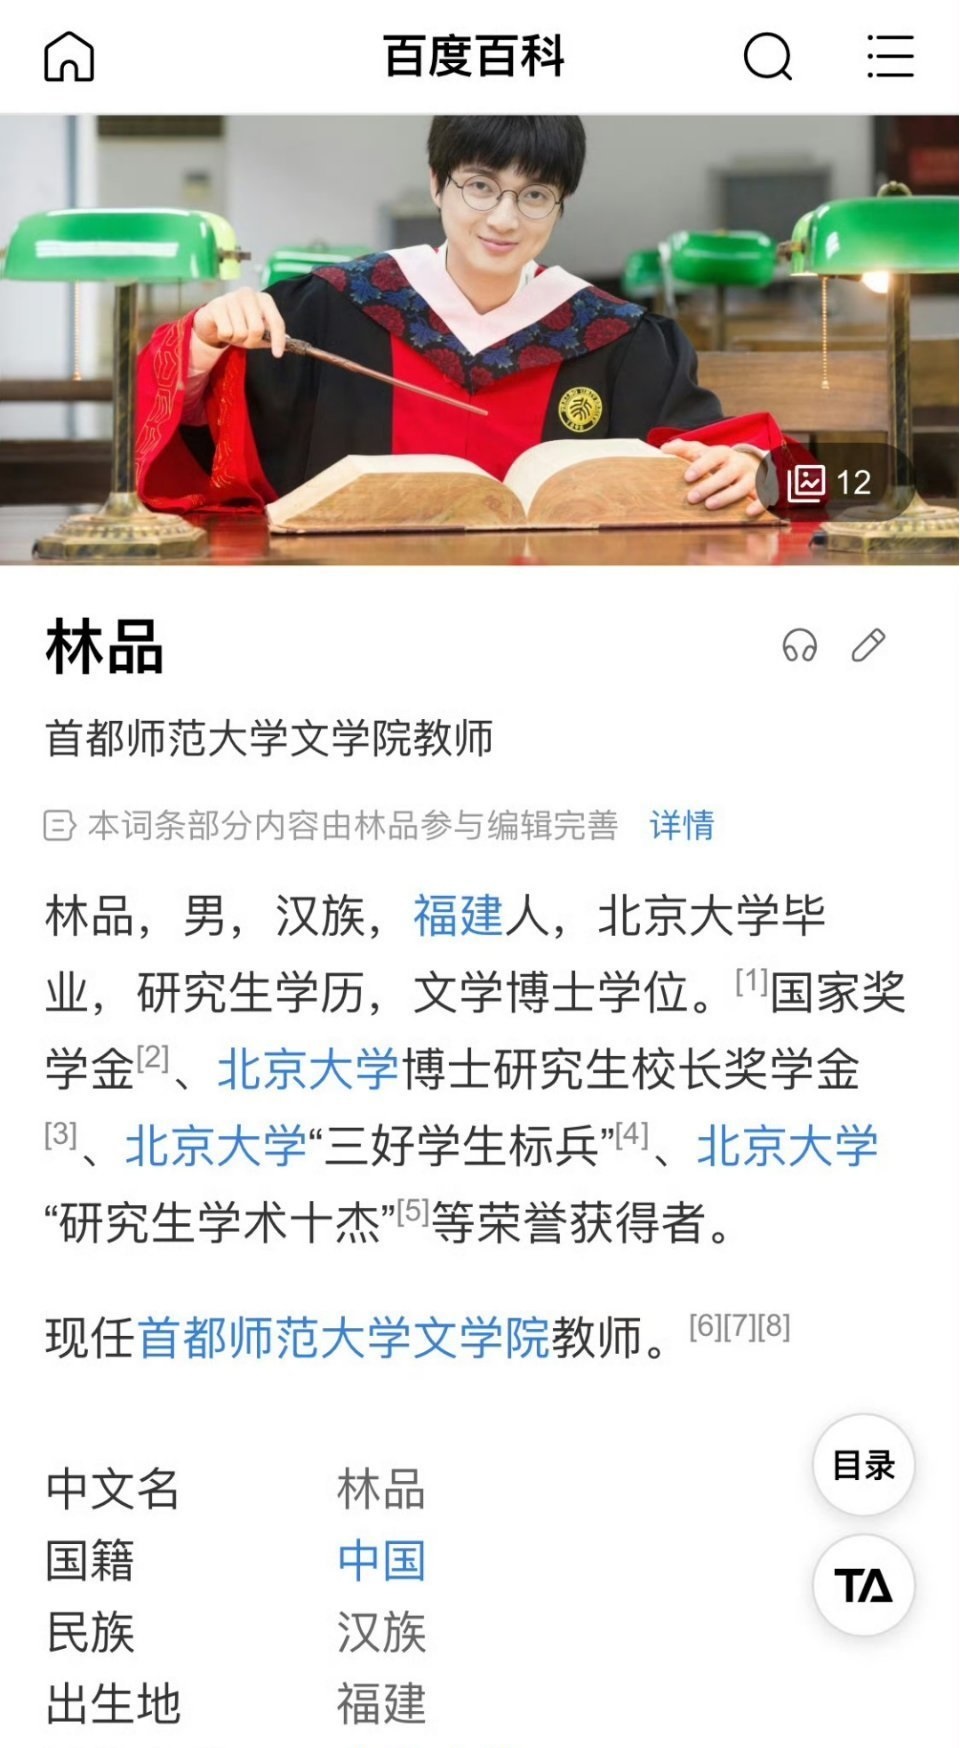 林品是北京首都师范大学的教师。微博